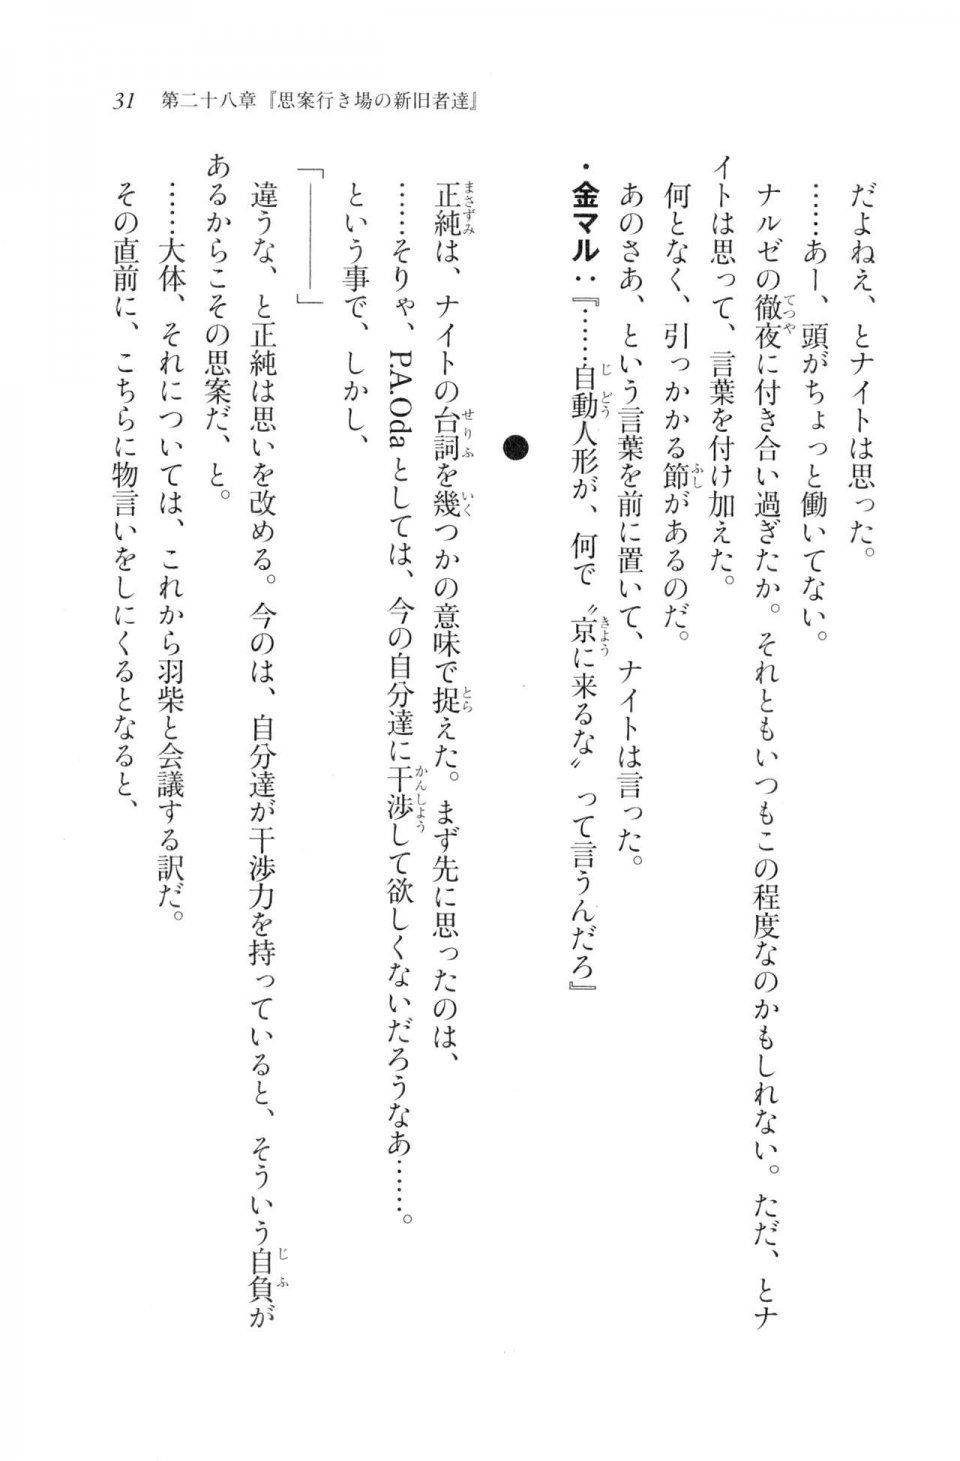 Kyoukai Senjou no Horizon LN Vol 20(8B) - Photo #31